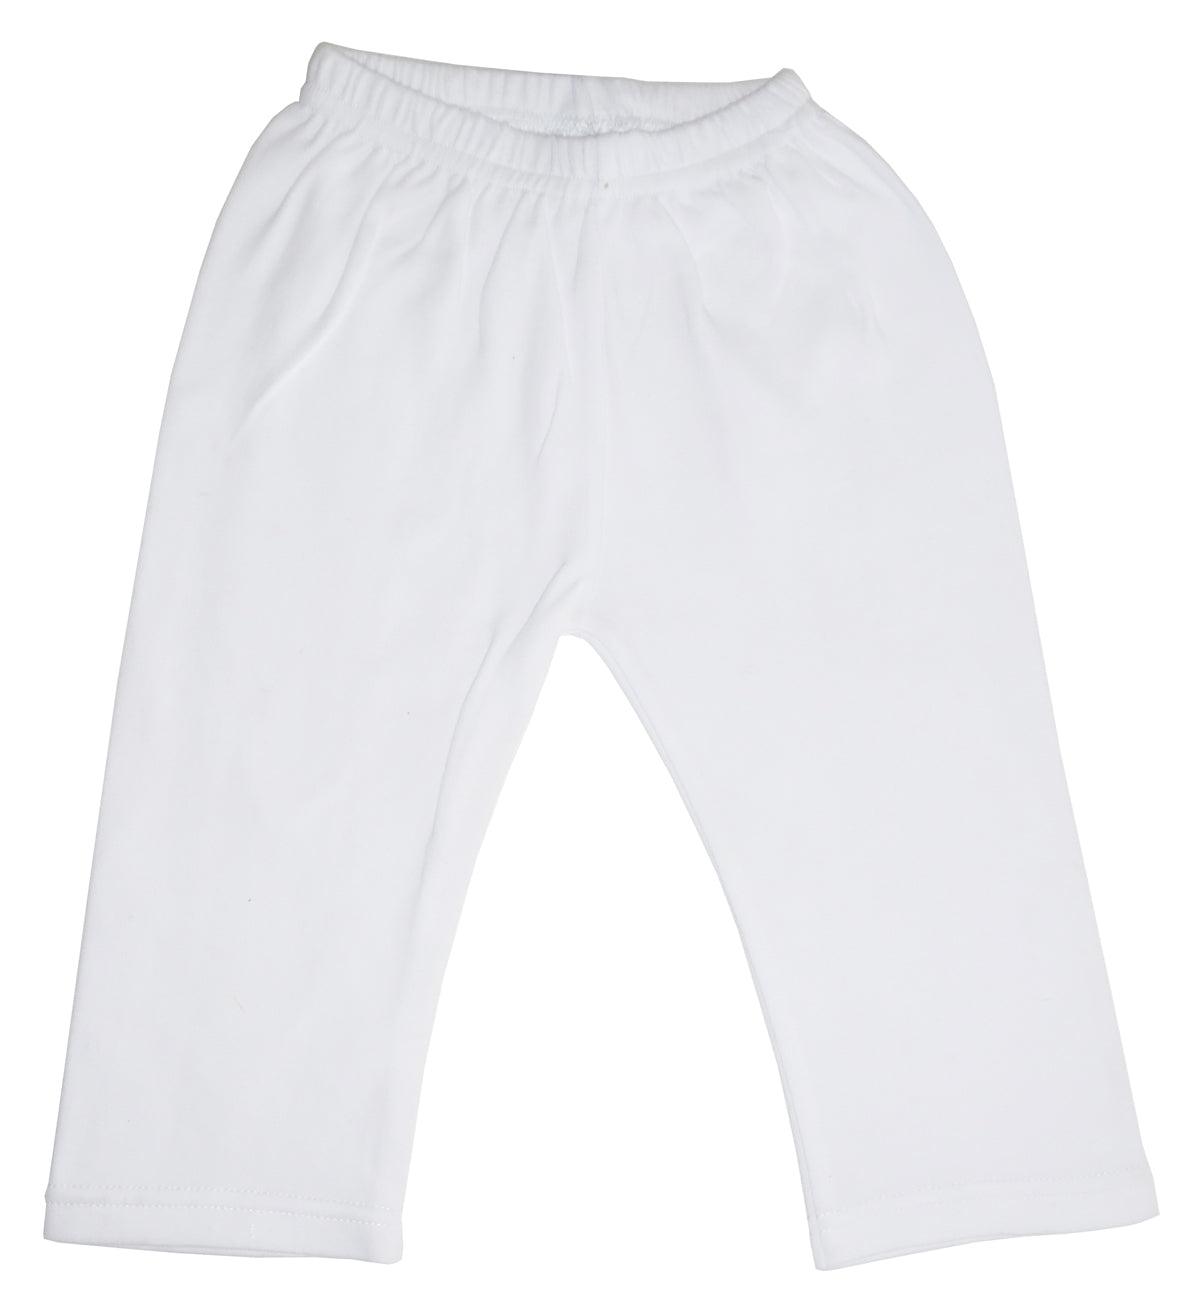 White Pants 418 - L & M Kee, LLC